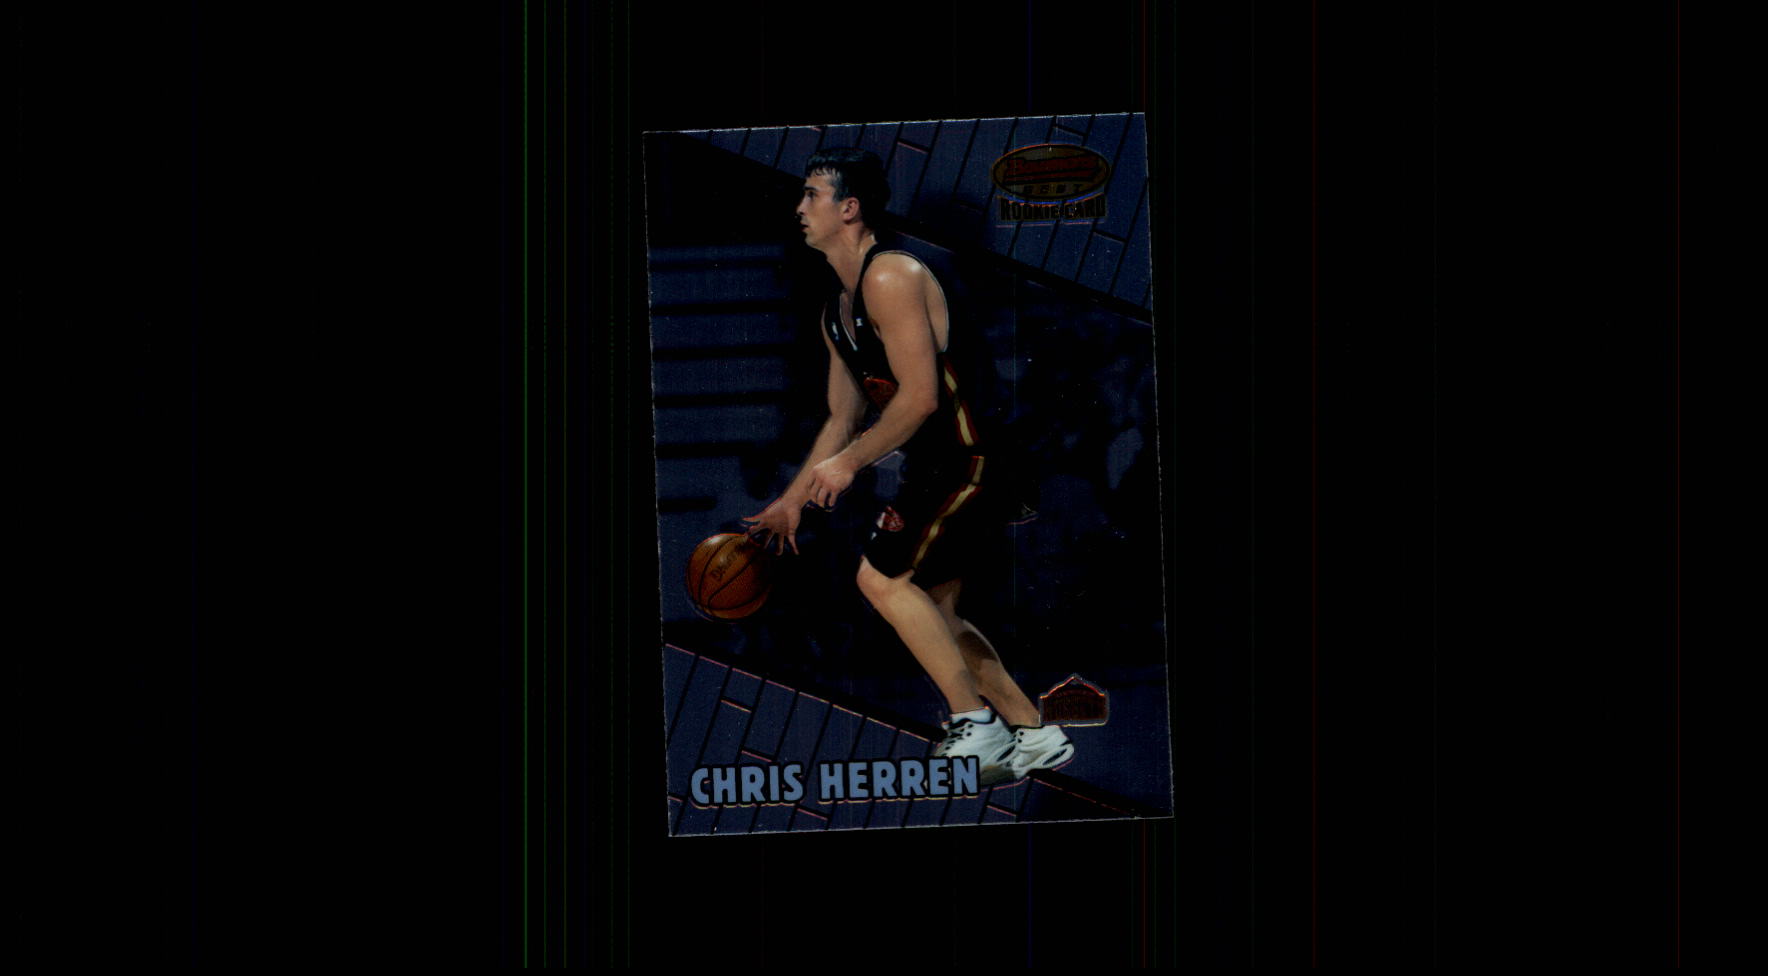  Chris Herren player image